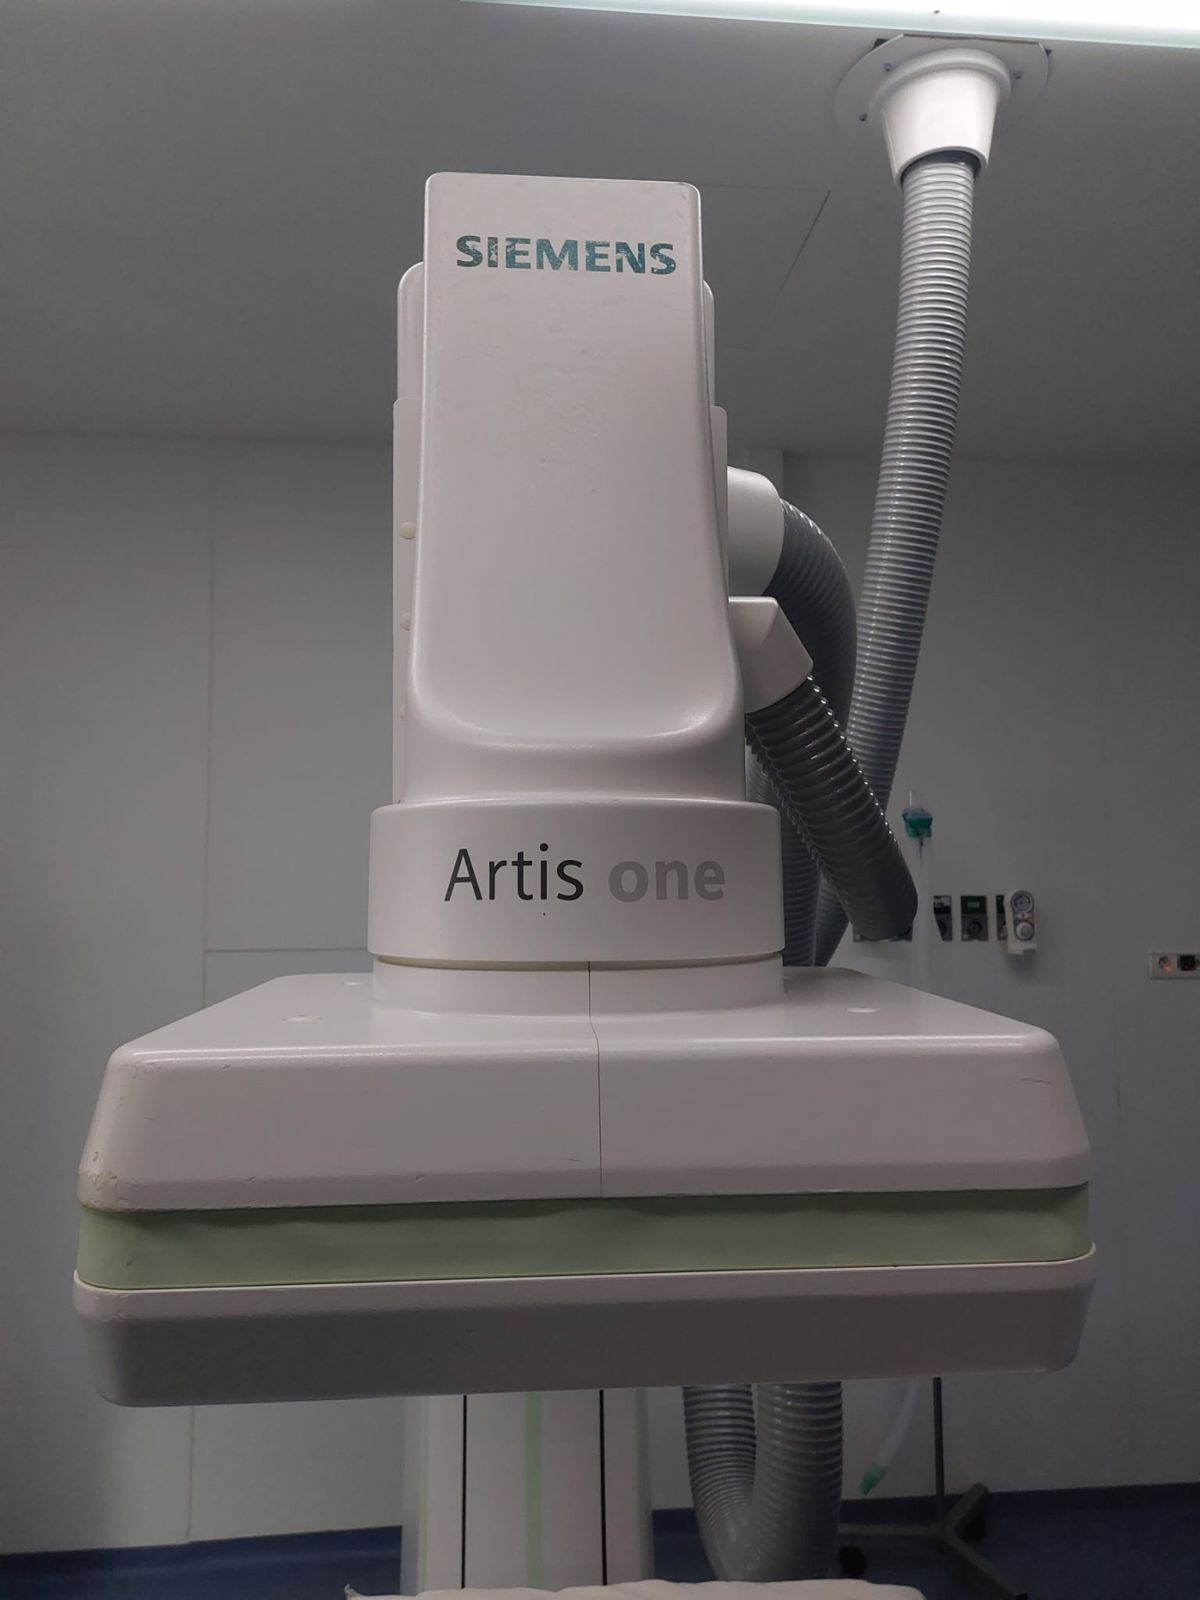 Siemens Artis One - 2016